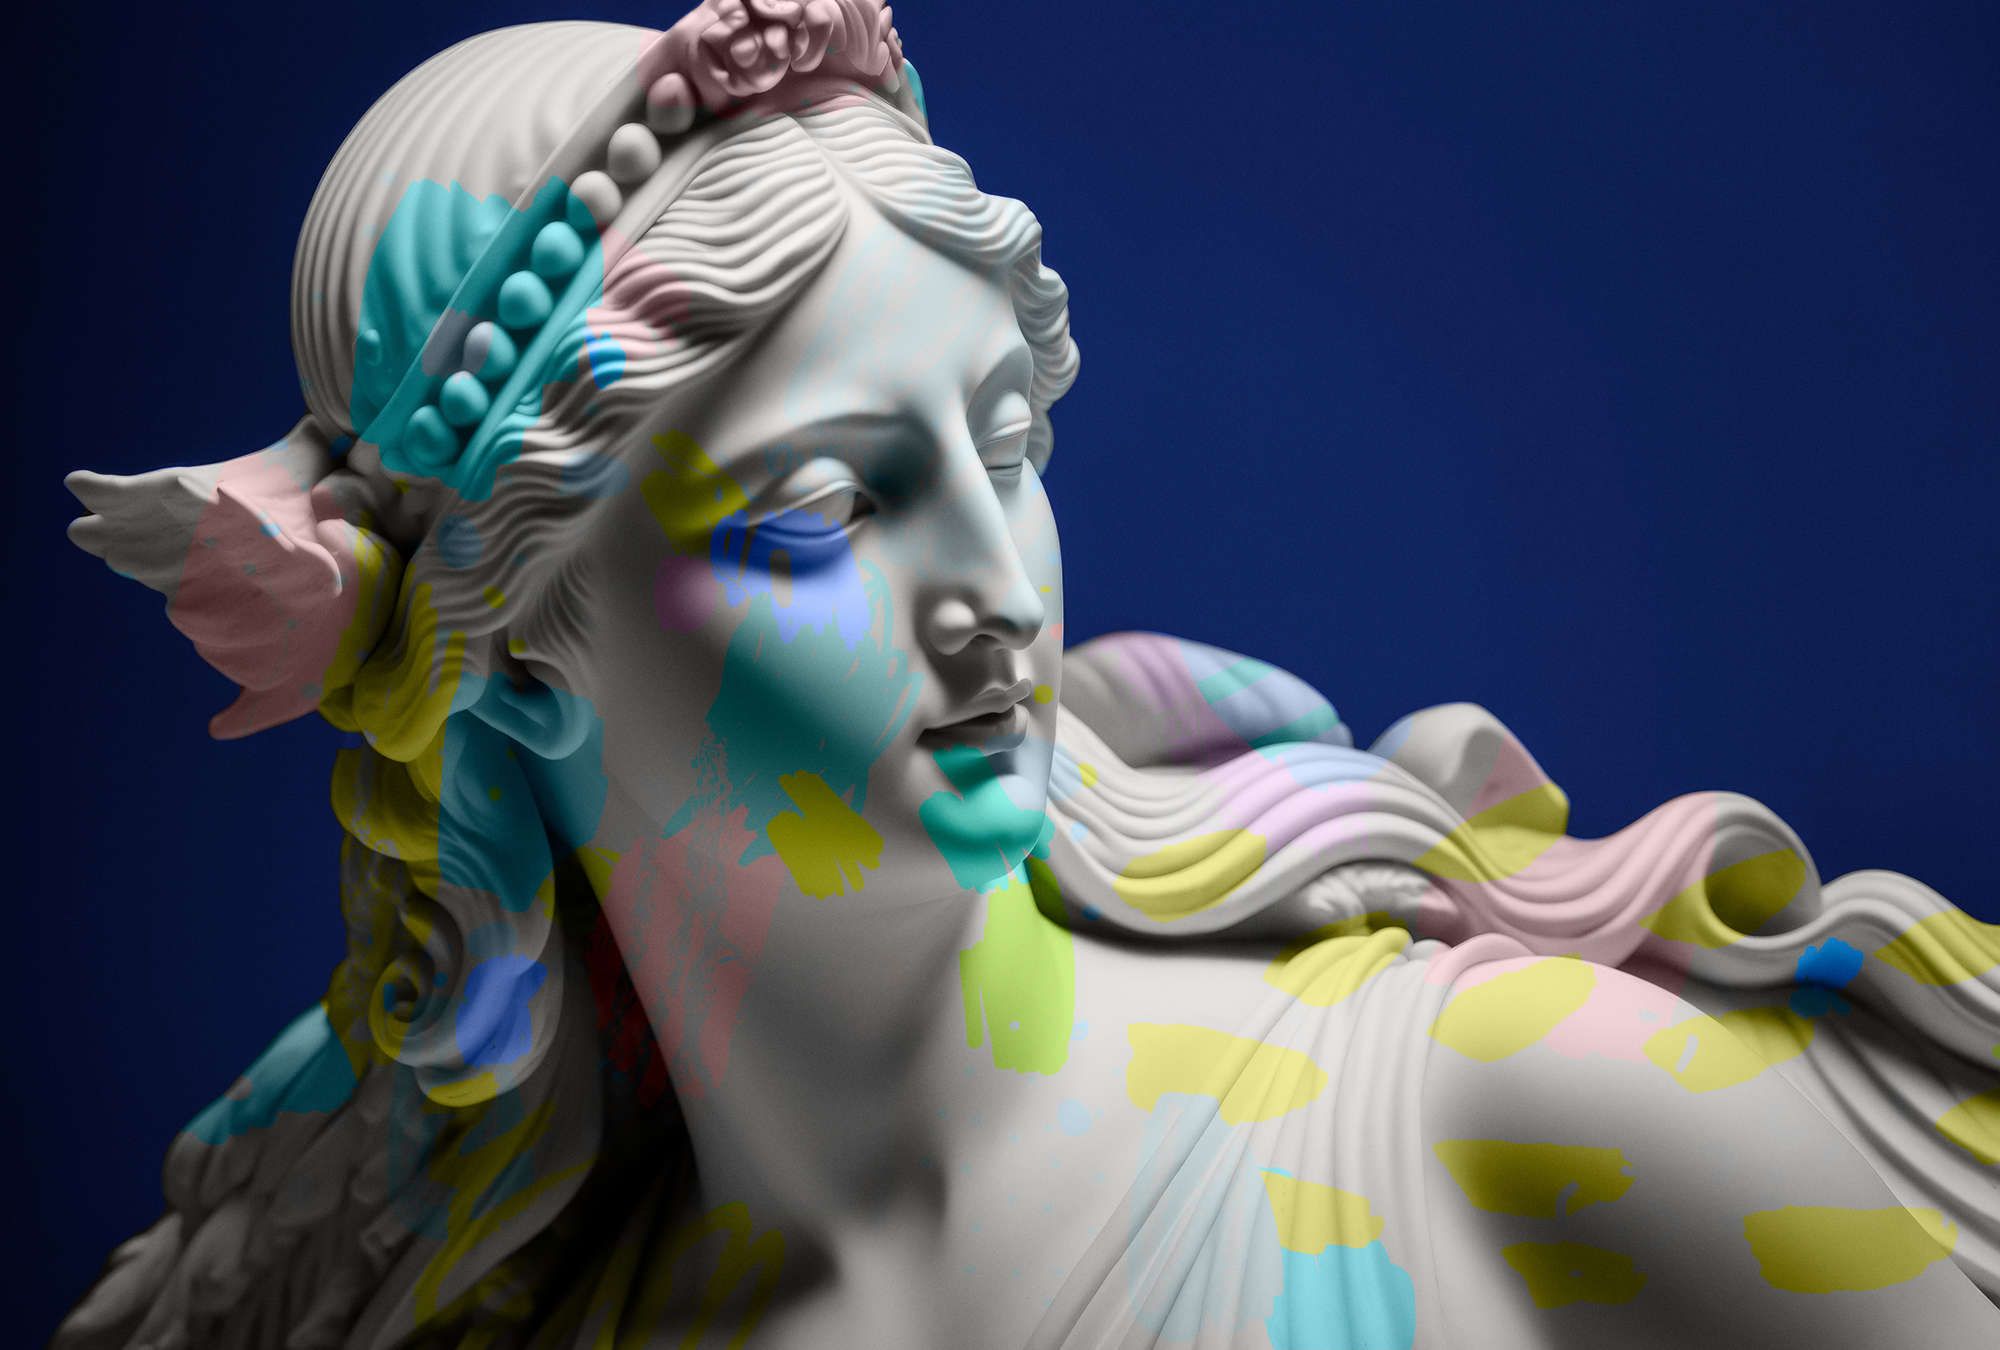             Fotomurali »anthea« - scultura femminile con accenti colorati - Materiali non tessuto leggermente strutturato
        